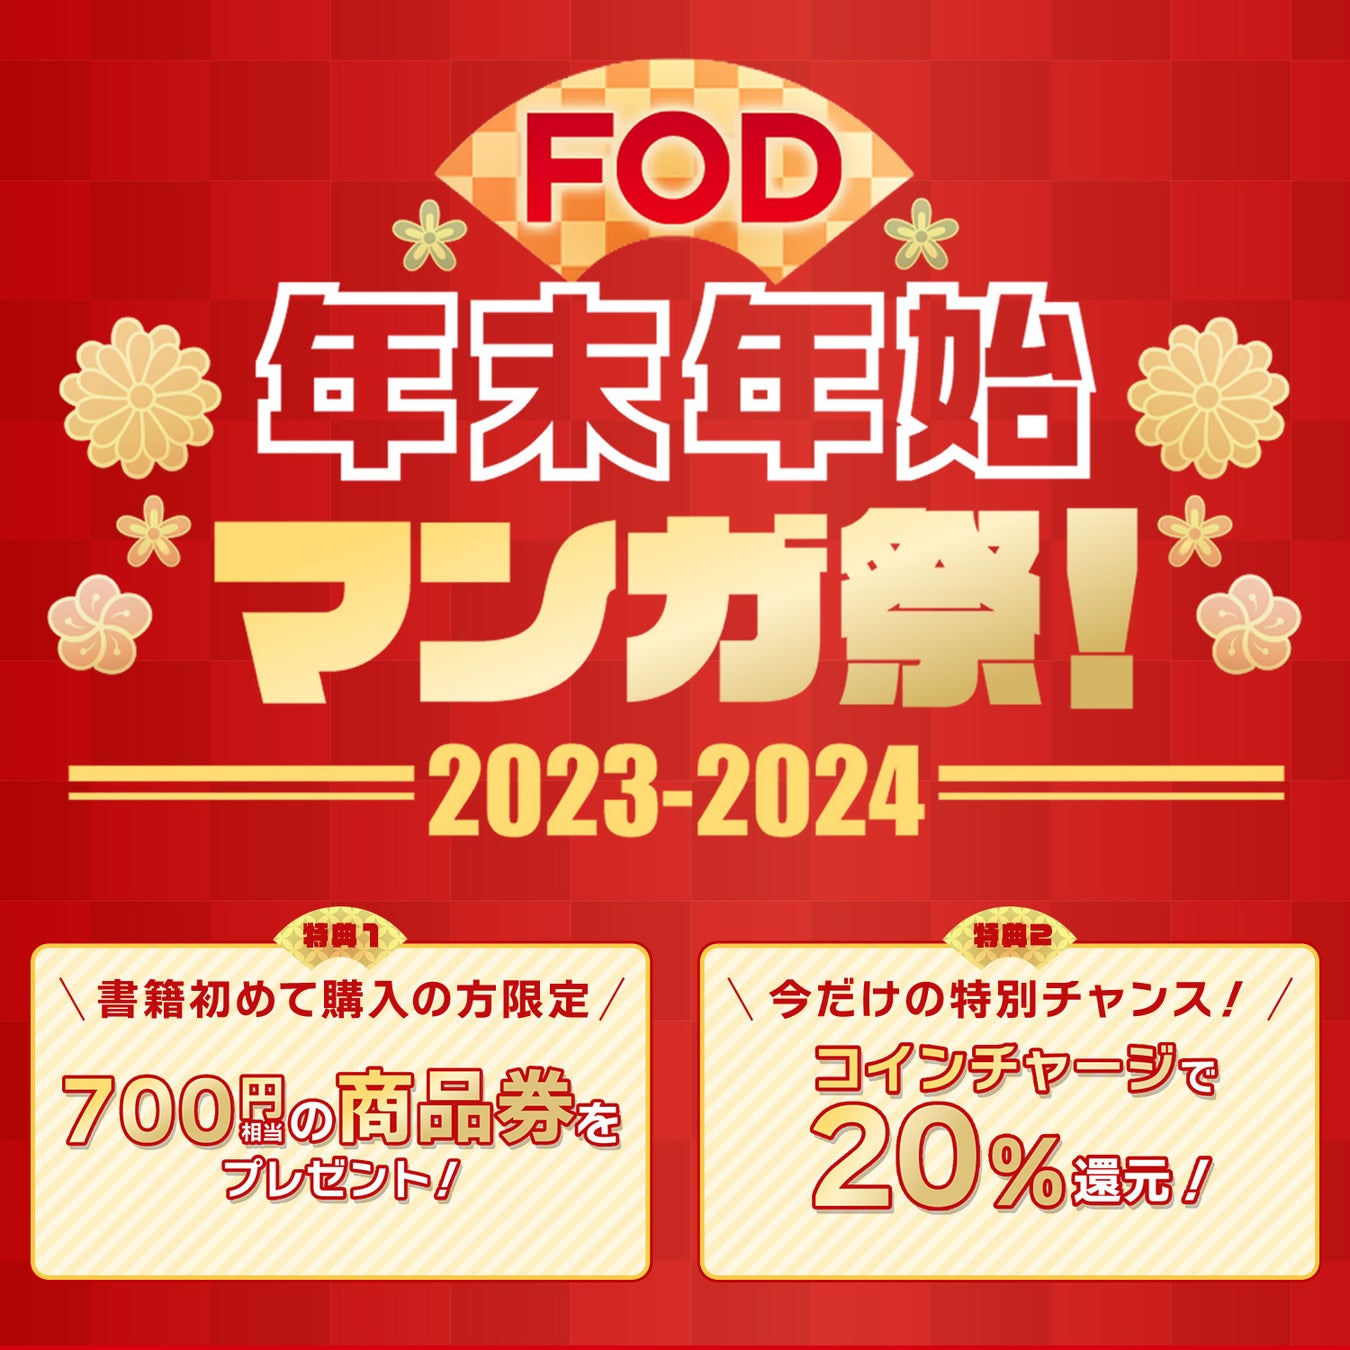 【フジテレビ】年末年始休みにFODの電子書籍がお得に購入できるキャンペーンを開催！「FOD年末年始マンガ祭」